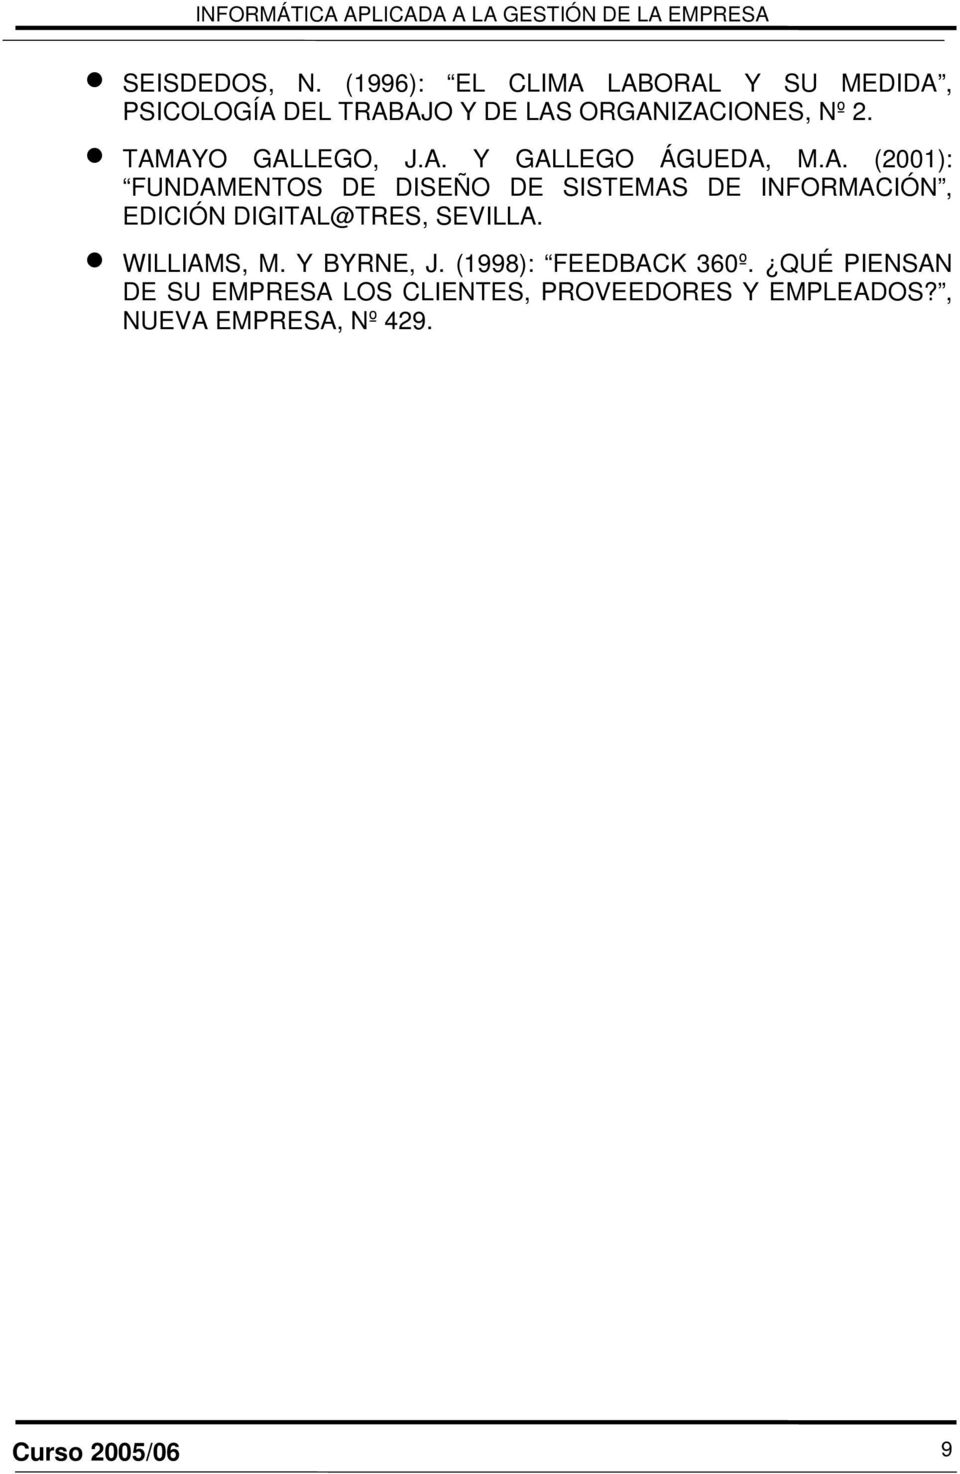 TAMAYO GALLEGO, J.A. Y GALLEGO ÁGUEDA, M.A. (2001): FUNDAMENTOS DE DISEÑO DE SISTEMAS DE INFORMACIÓN, EDICIÓN DIGITAL@TRES, SEVILLA.